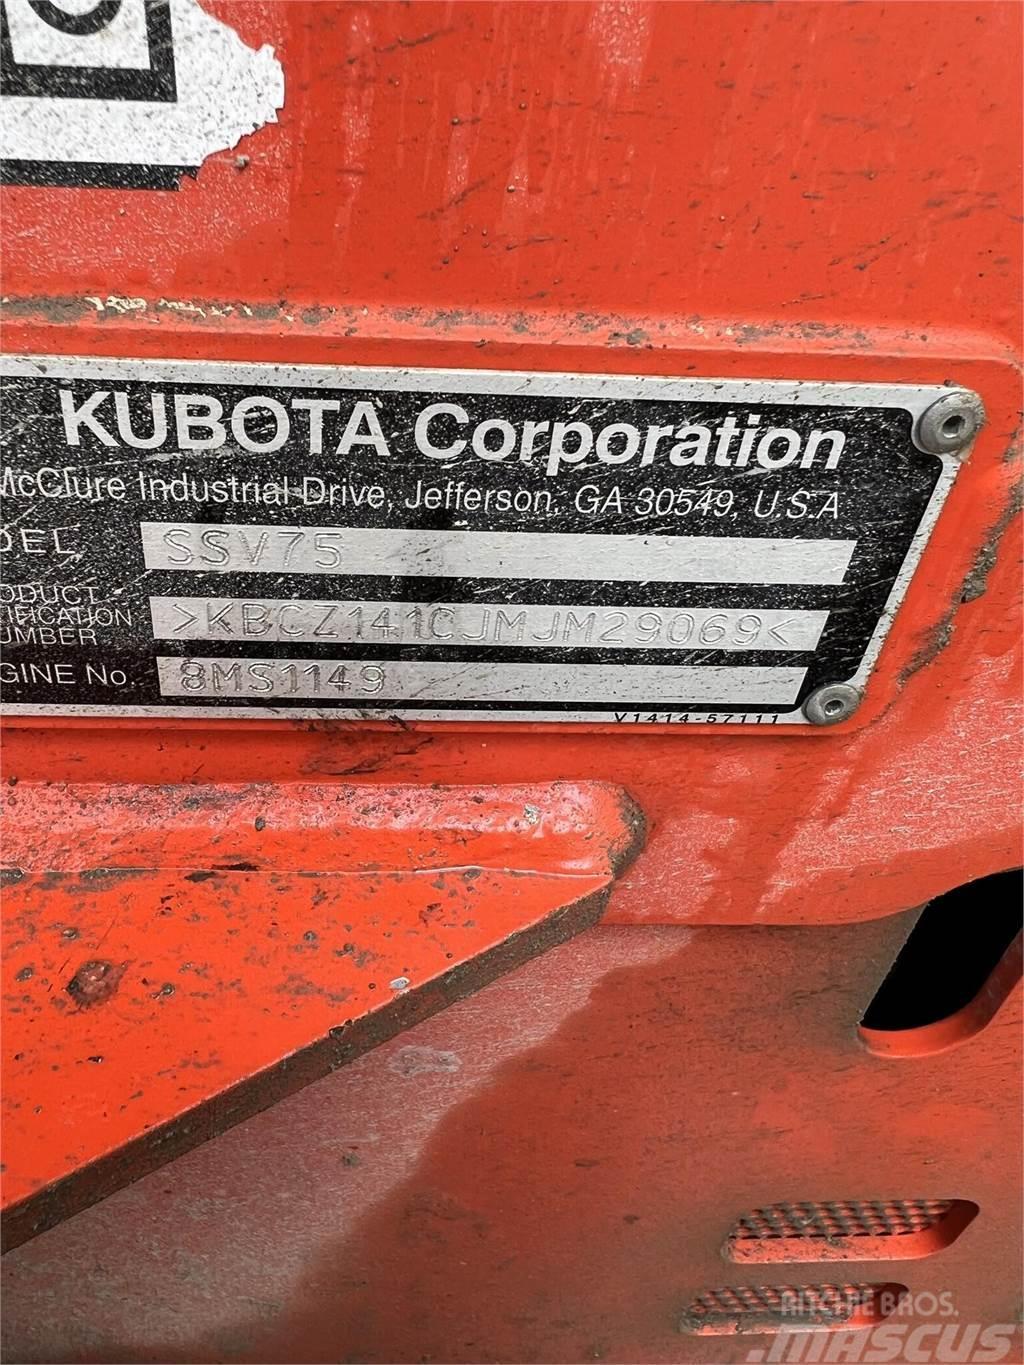 Kubota SSV75 Kompaktlaadurid